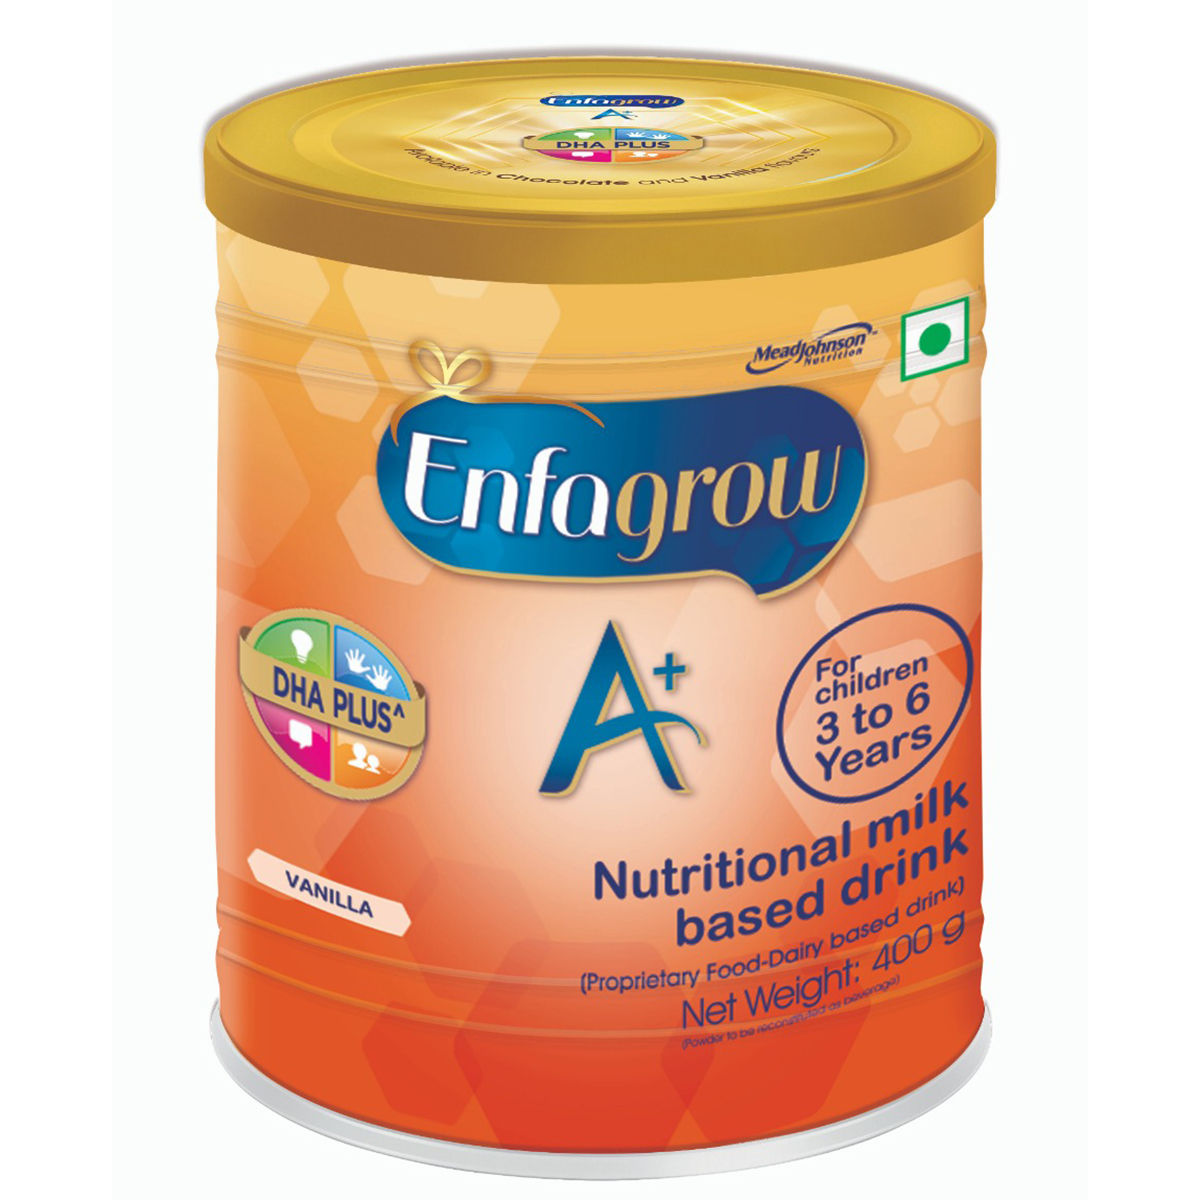 Buy Enfagrow A+ Vanilla Flavour Nutritional Milk Powder for Children 3 to 6 years, 400 gm Online